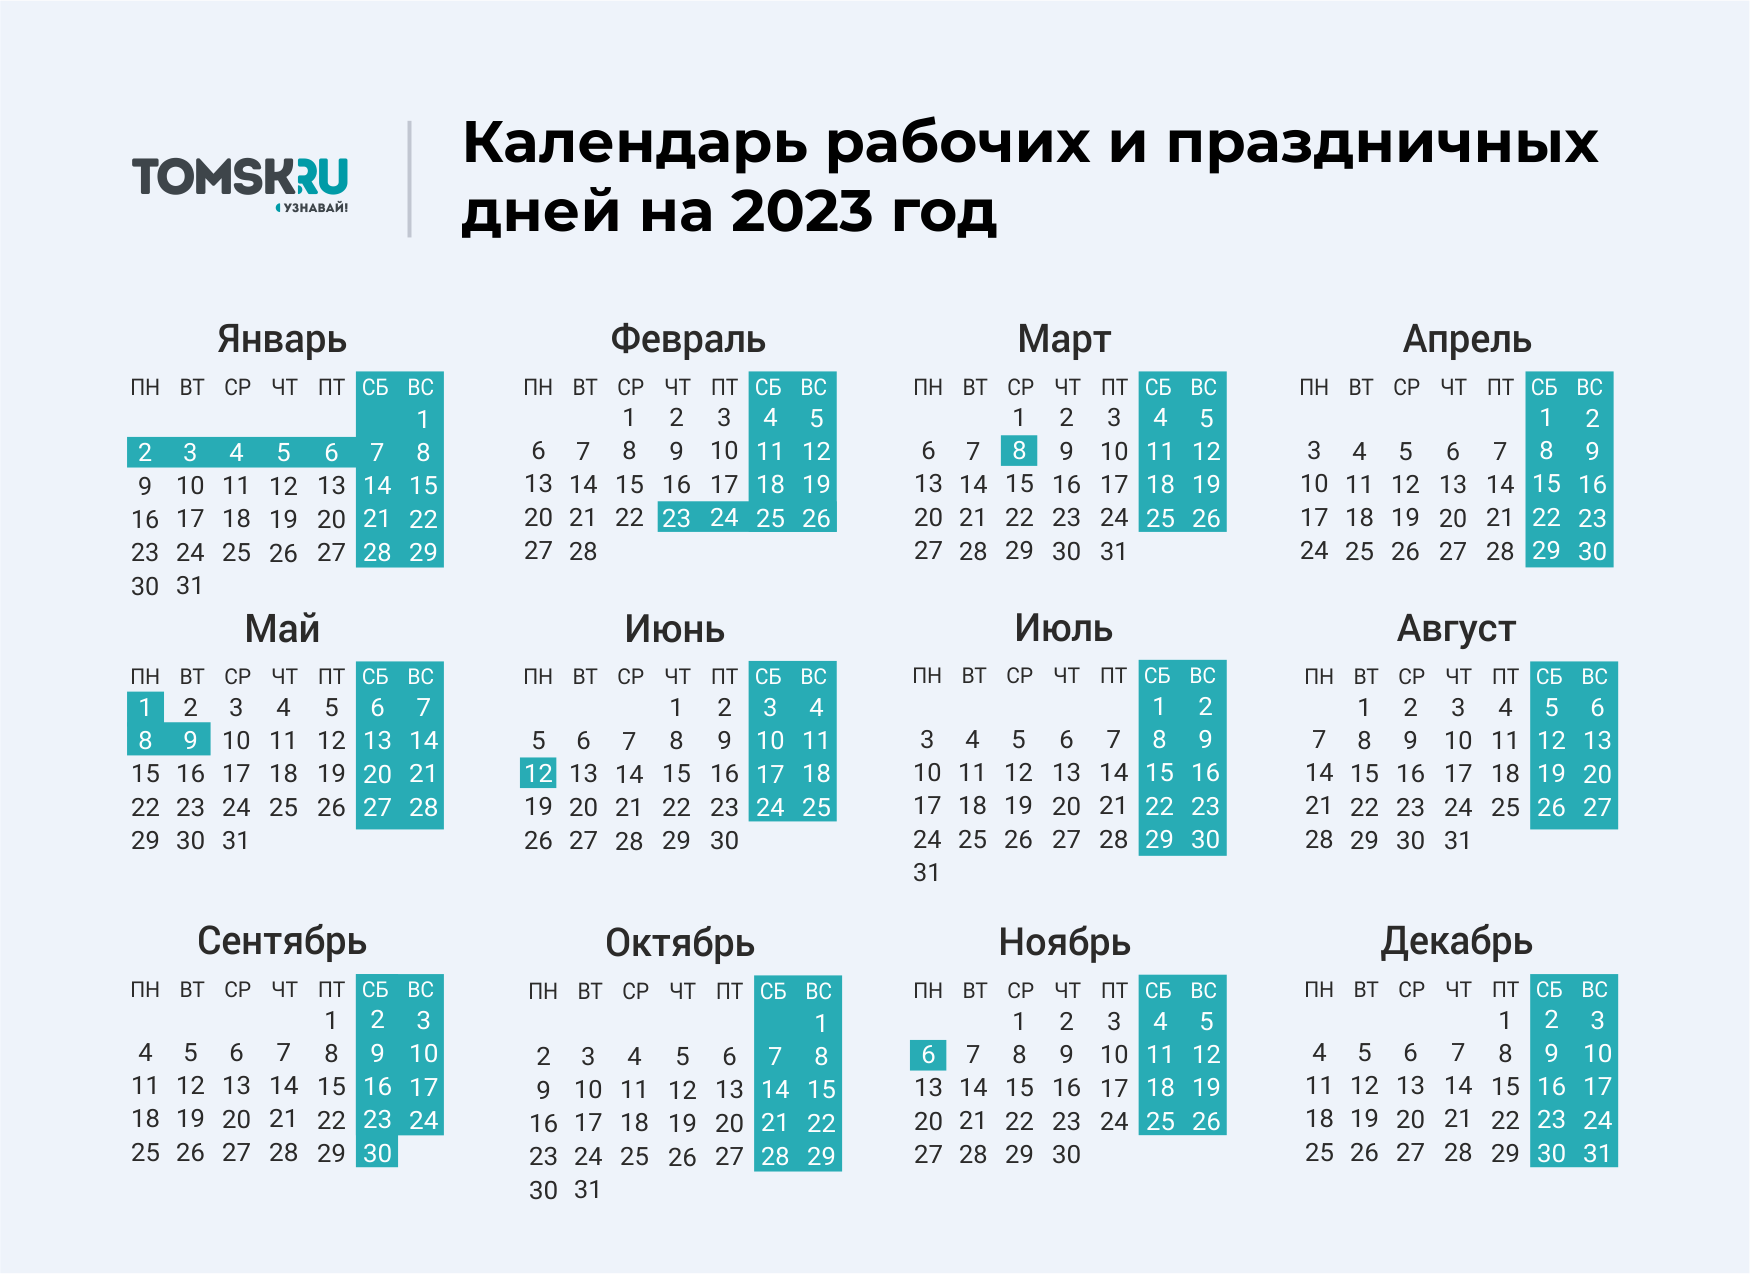 Сколько выходных на 23 февраля в россии. Выходные дни в 2023 году в России календарь. Календарь выходных и праздничных дней на 2023 год в России. Календарь праздничных выходеыхв 2023 году. Календарь на 2023 год с праздниками и выходными выходные снизу.